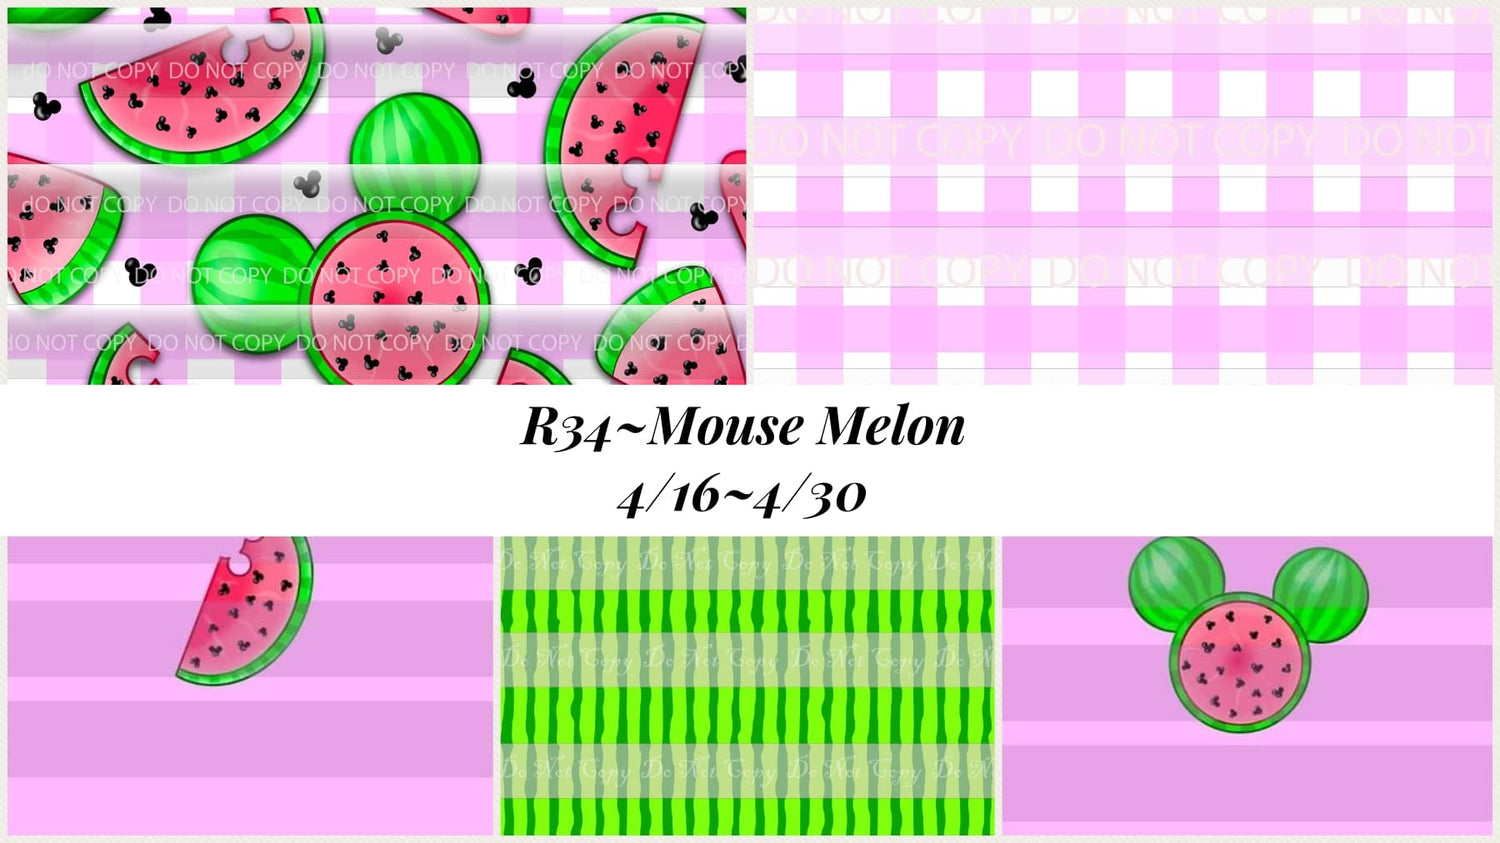 Preorder R34 Mouse Melon